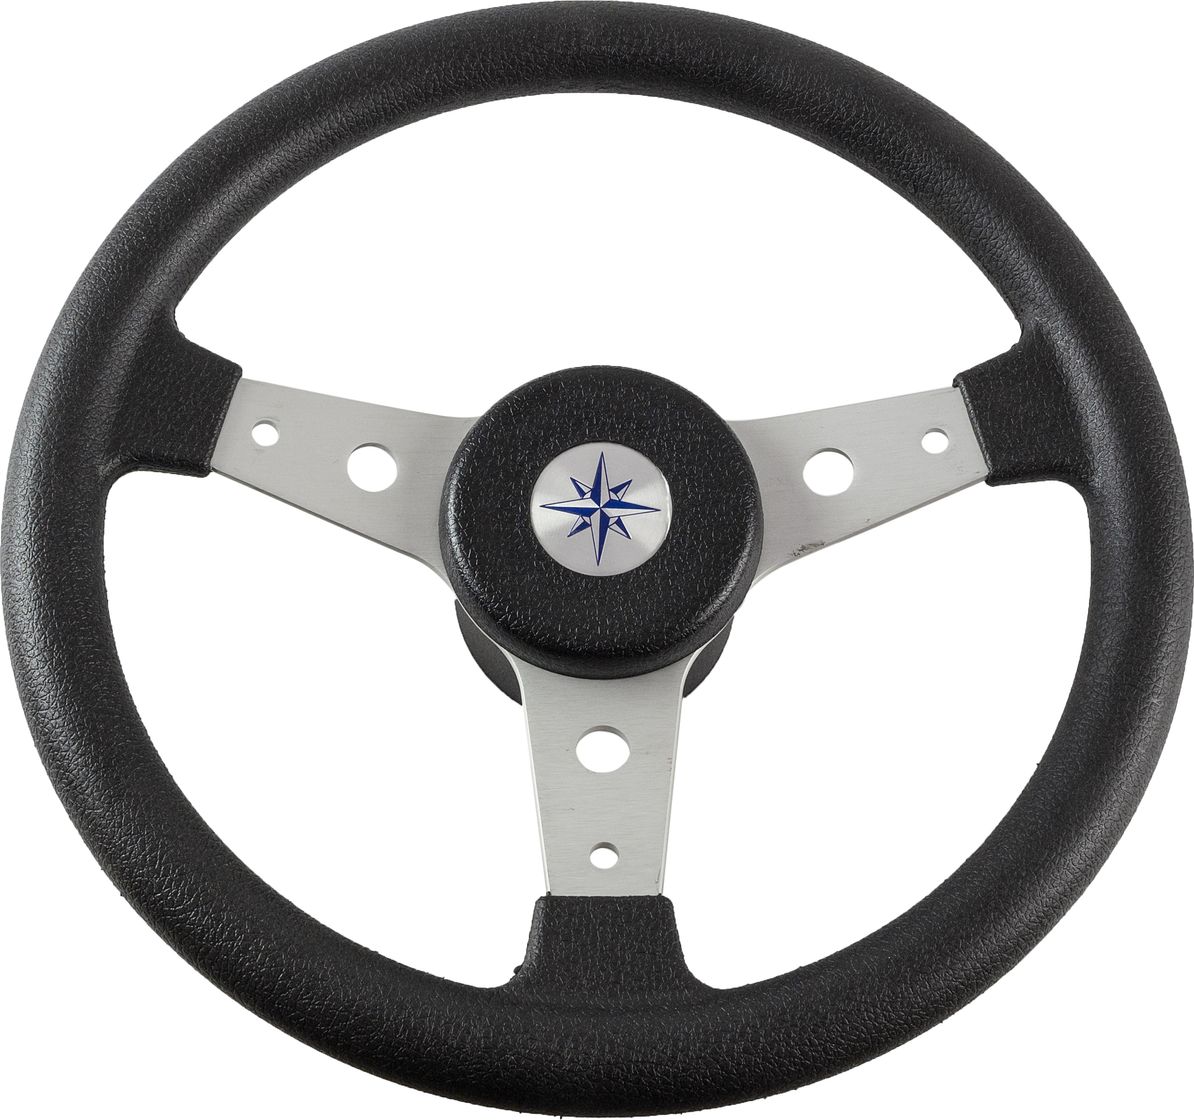 Рулевое колесо DELFINO обод черный, спицы серебряные д. 340 мм VN70401-01 рулевое колесо moza racing cs v2p rs057